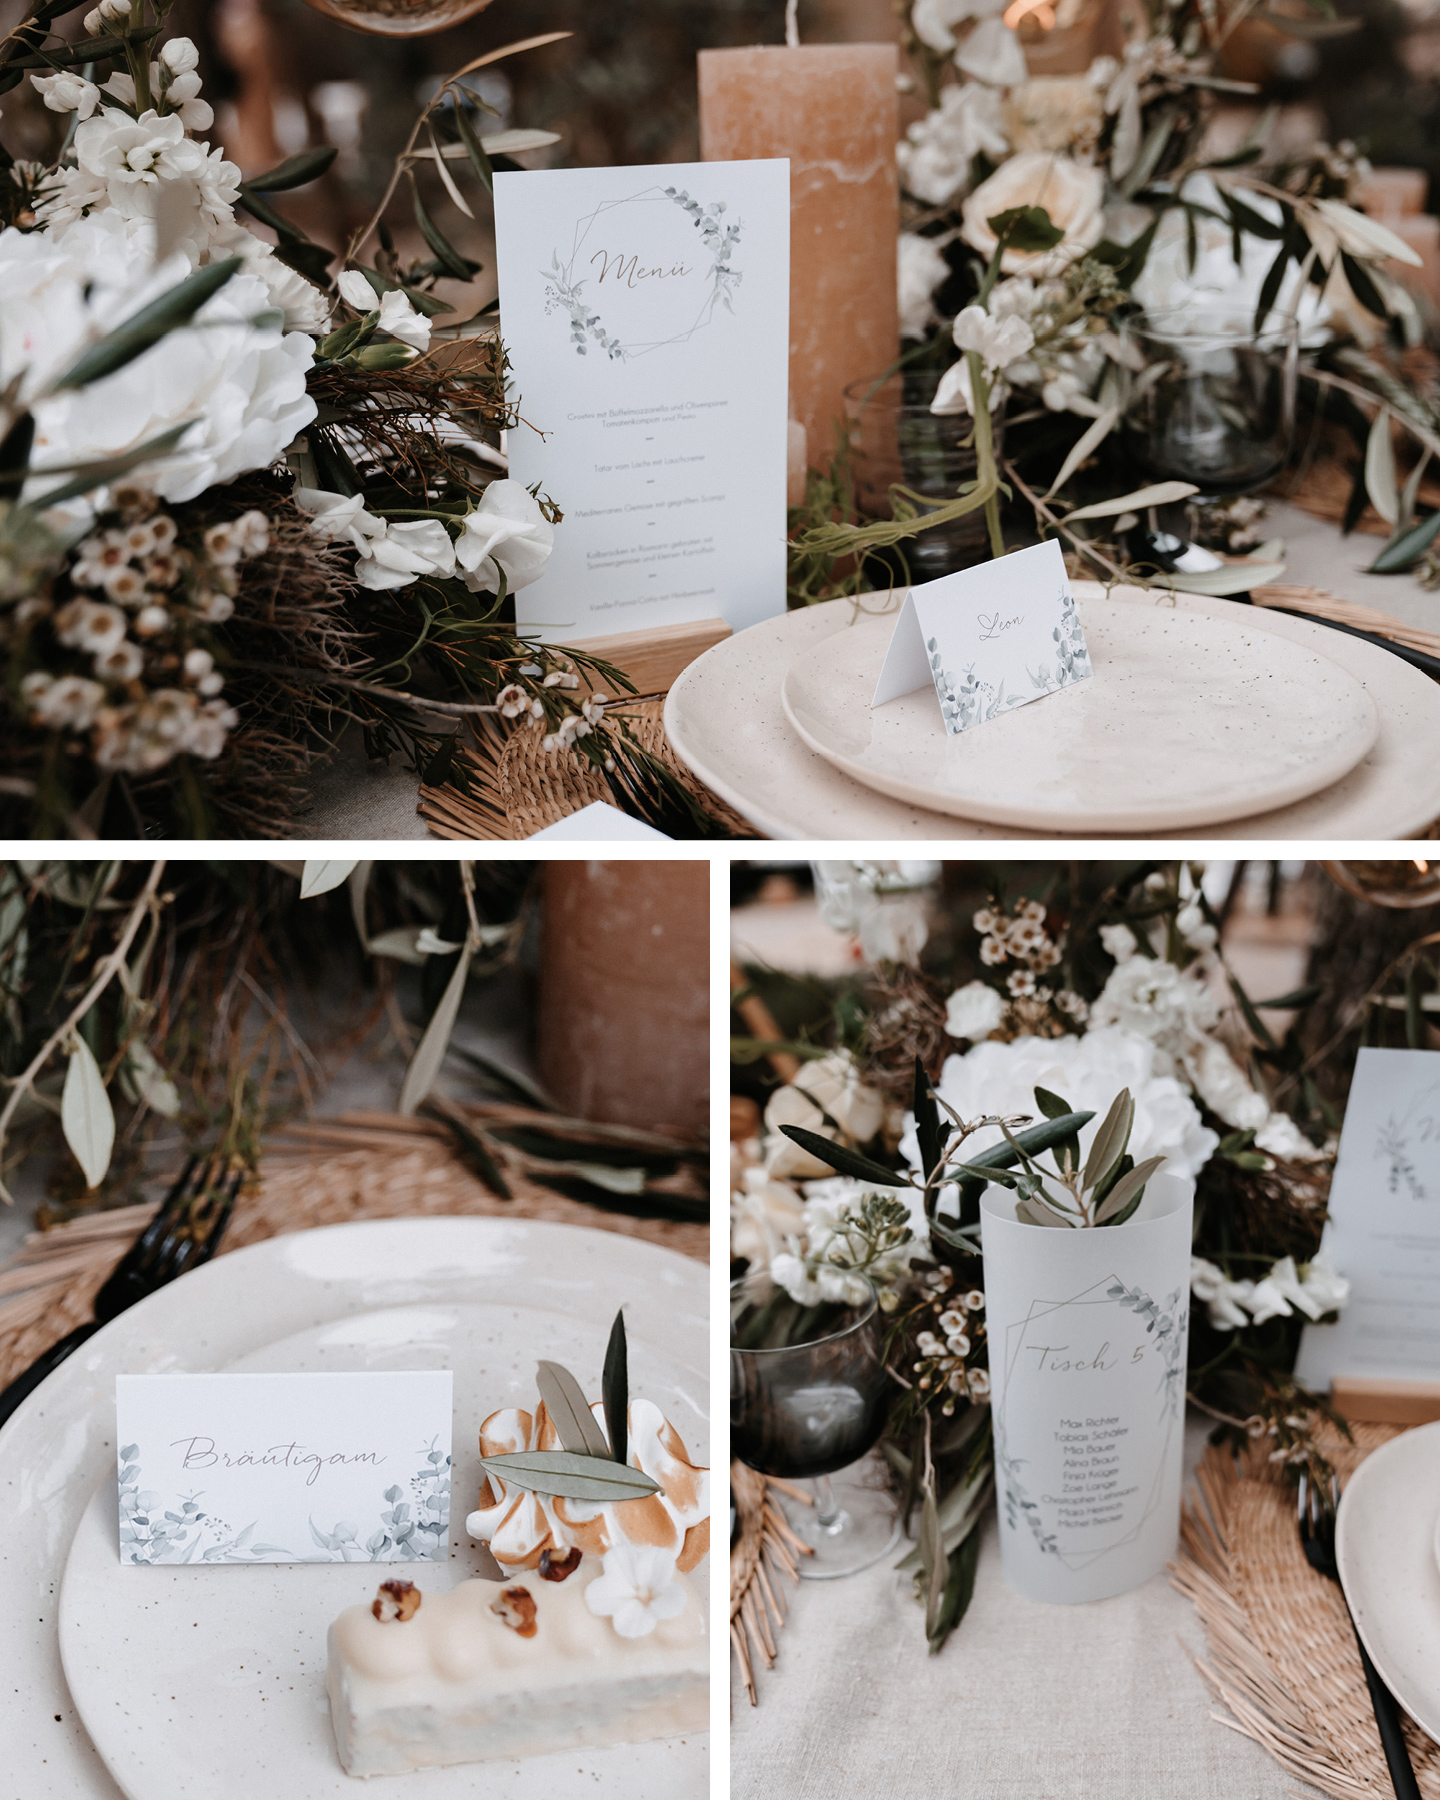 Menükarte, Tischkarte, Namenskarte mit Eukalyptus Illustrationen stehen auf der im Boho Greenery Stil dekorierten Hochzeitstafel.